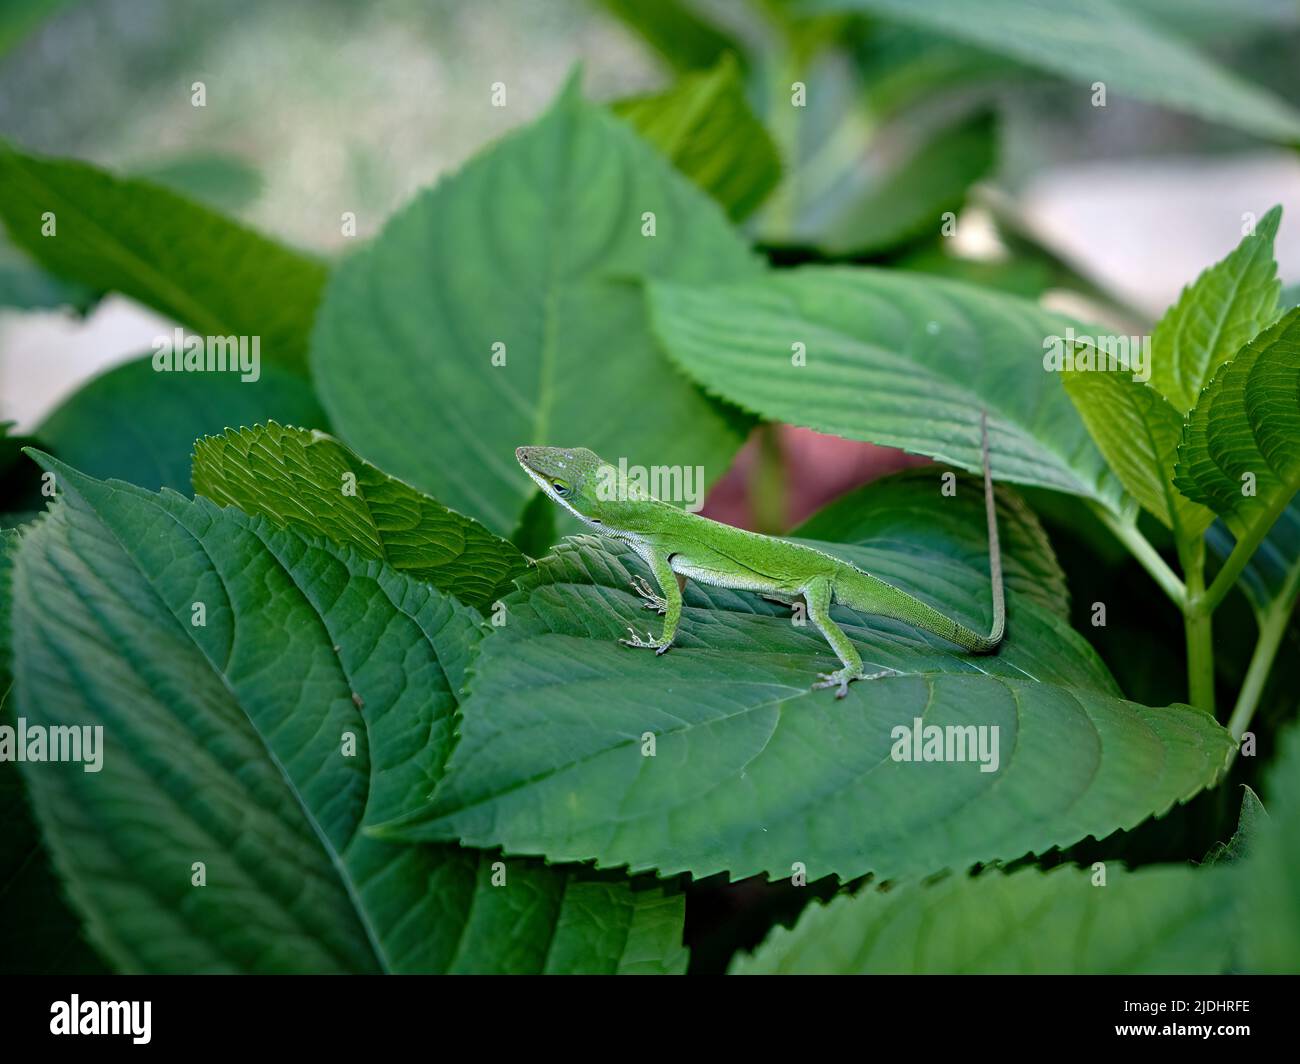 Anolis carolinensis ou vert anolis également connu comme un lézard d'arbre vert reposant sur des feuilles vertes dans un jardin en Alabama, États-Unis. Banque D'Images